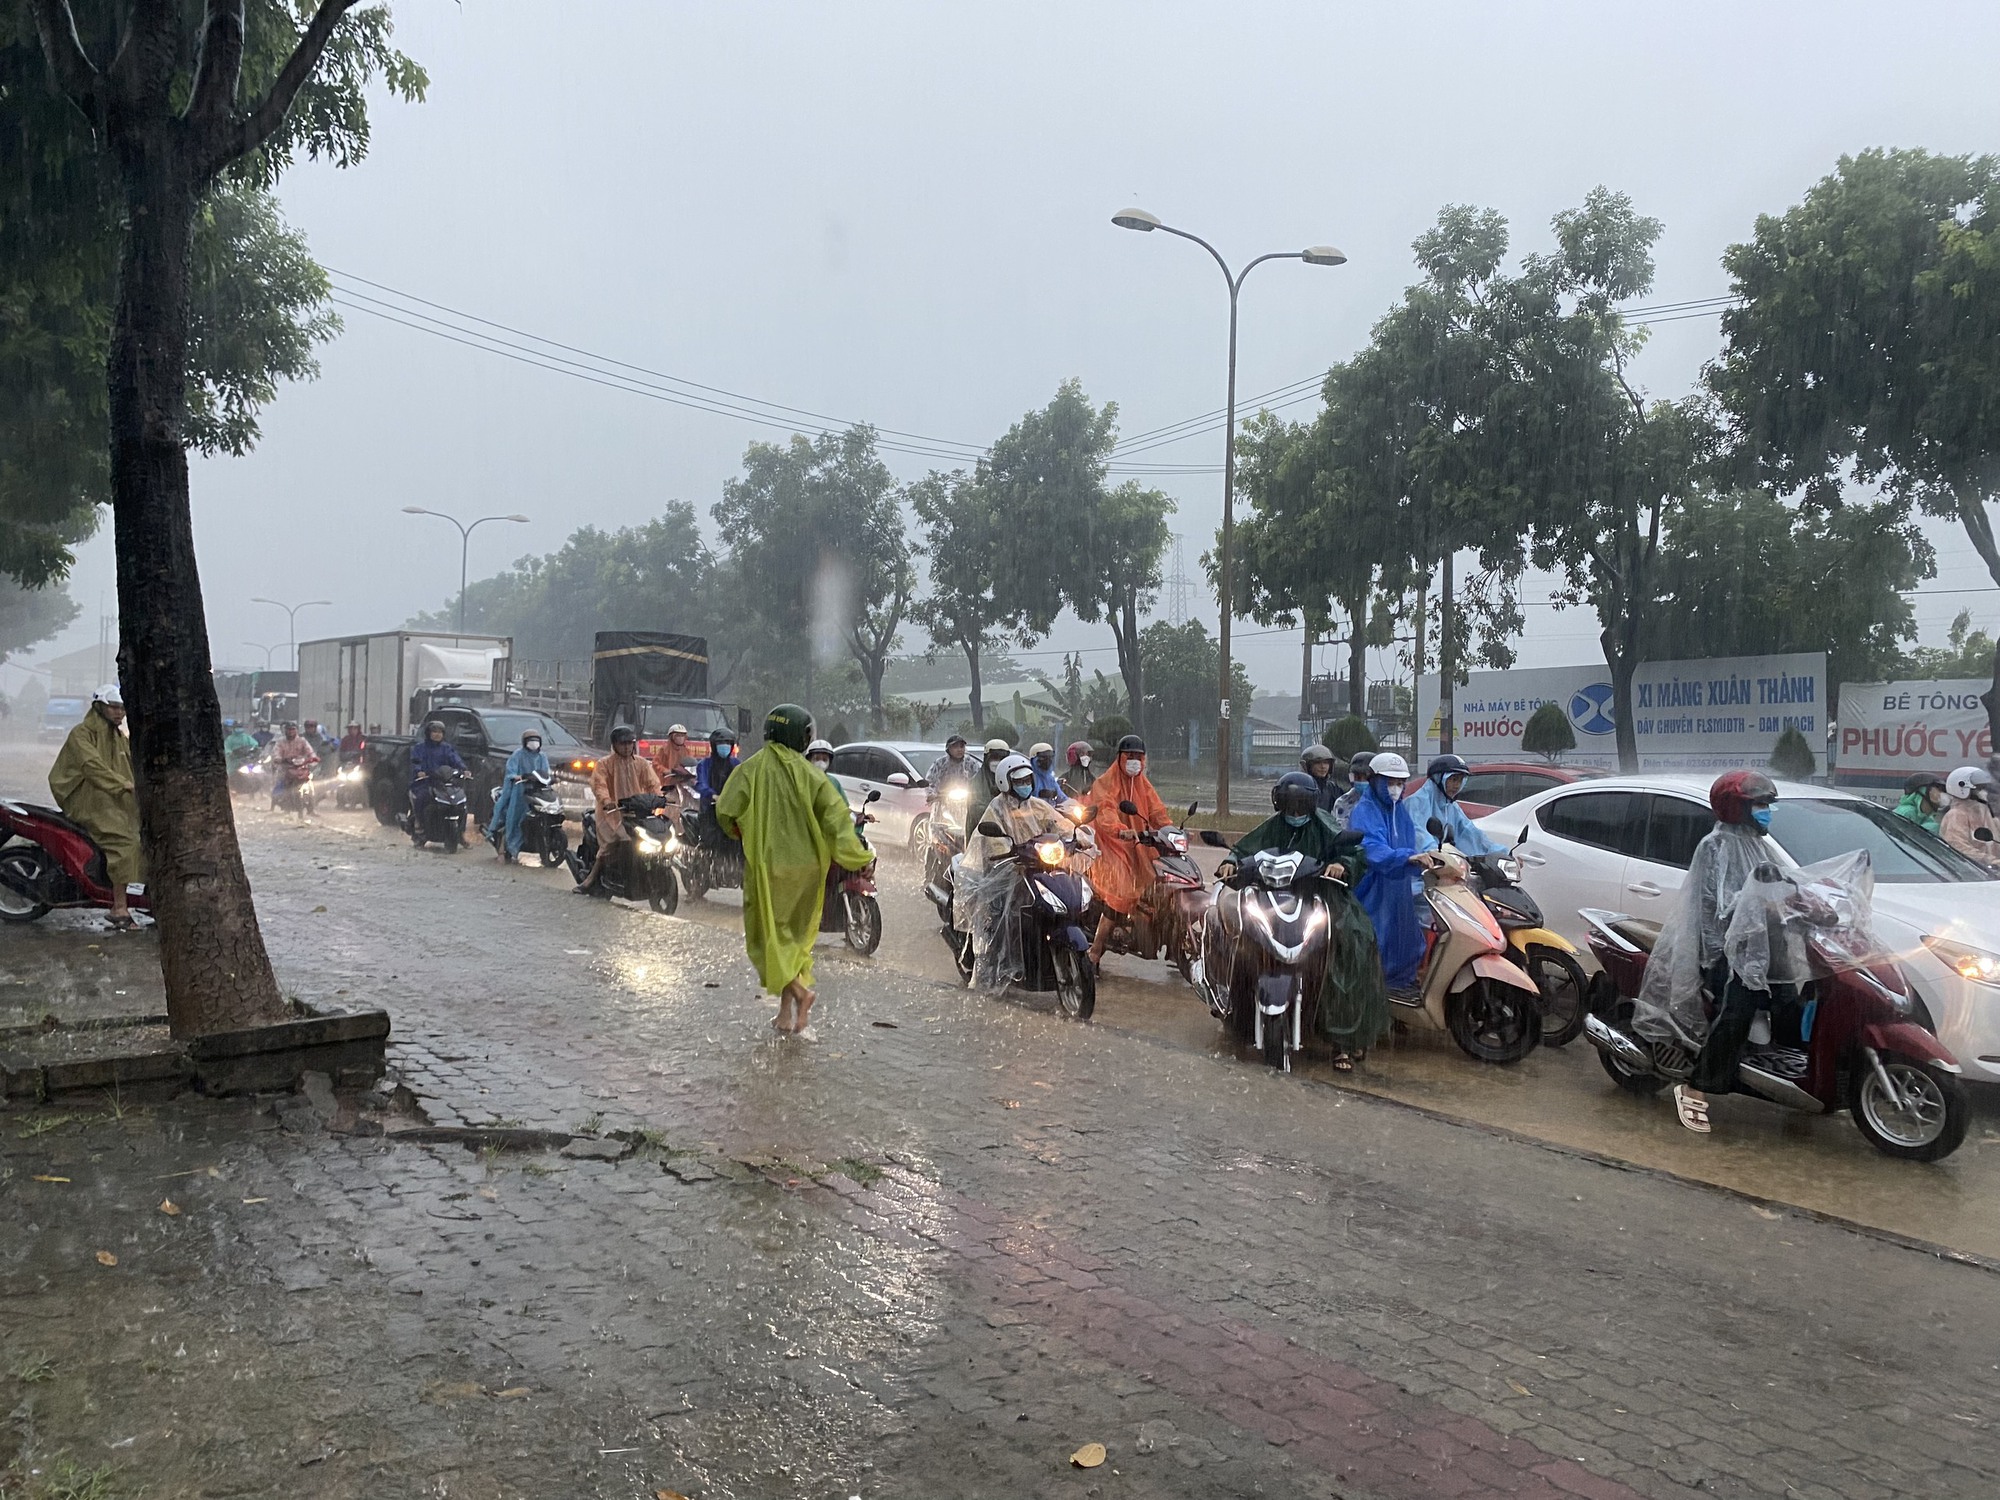 Đường phố Đà Nẵng thành sông sau mưa lớn, ô tô bì bõm lội nước - Ảnh 2.